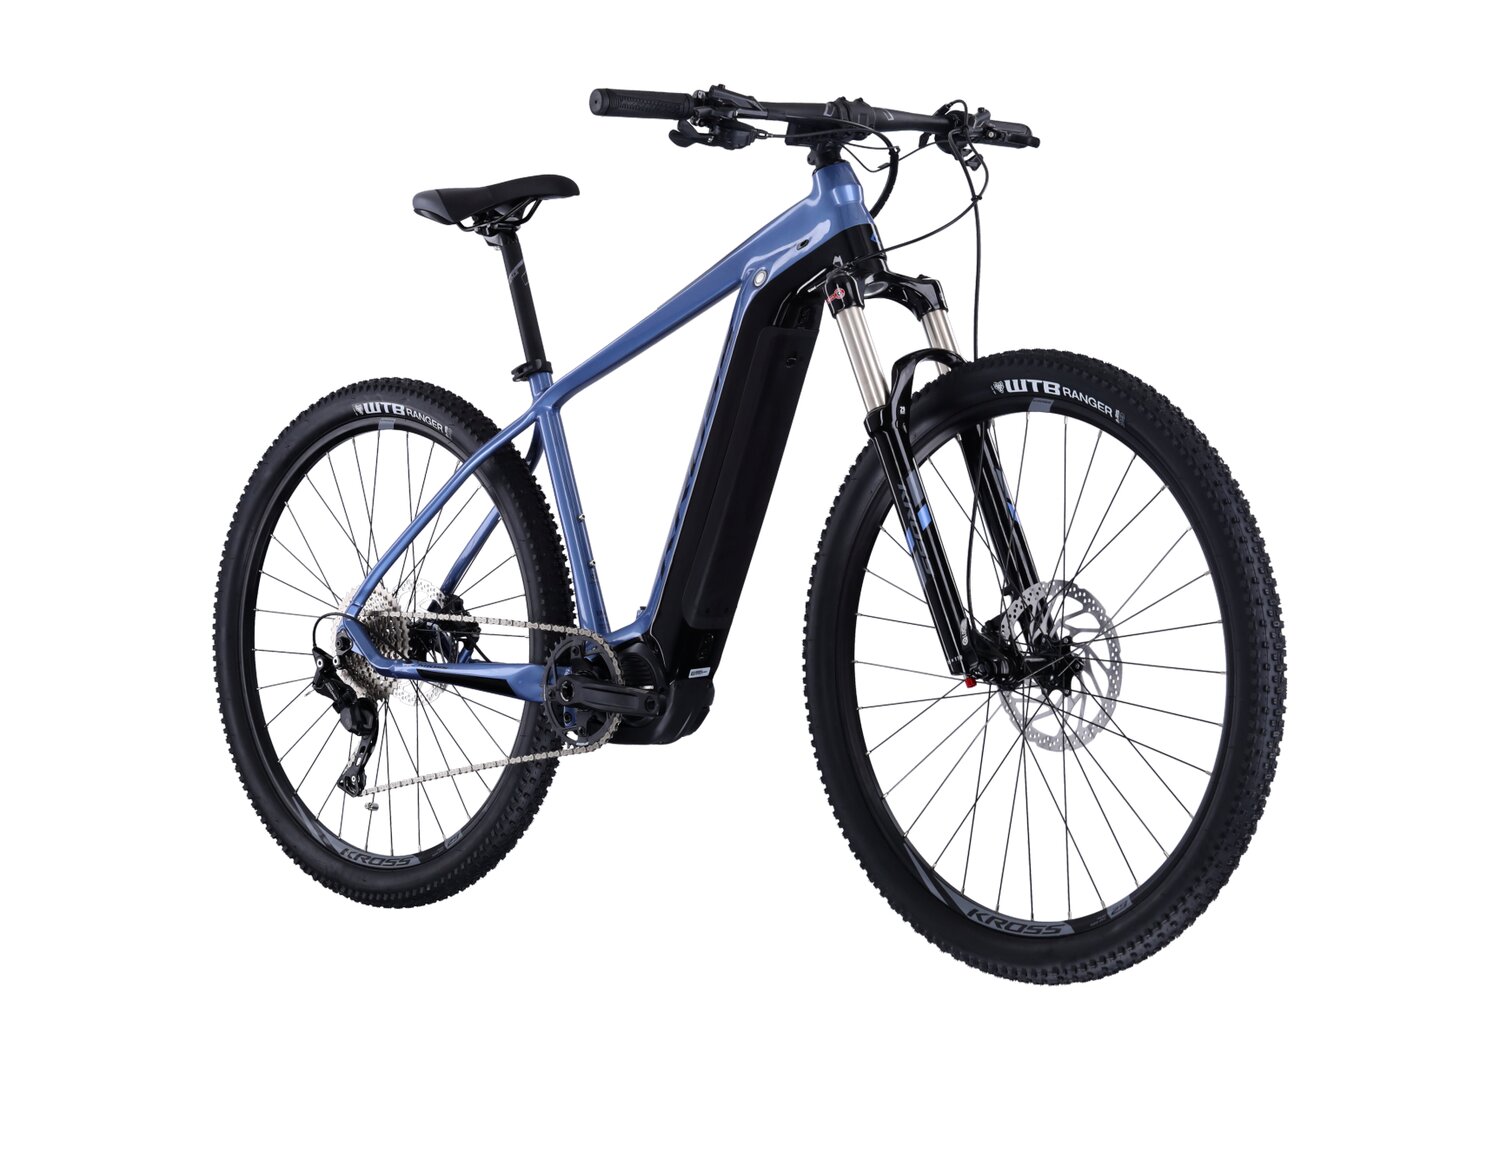  Elektryczny rower górski Ebike MTB XC KROSS Level Boost 2.0 500 Wh na aluminiowej ramie w kolorze niebieskim wyposażony w osprzęt Shimano i napęd elektryczny Shimano 